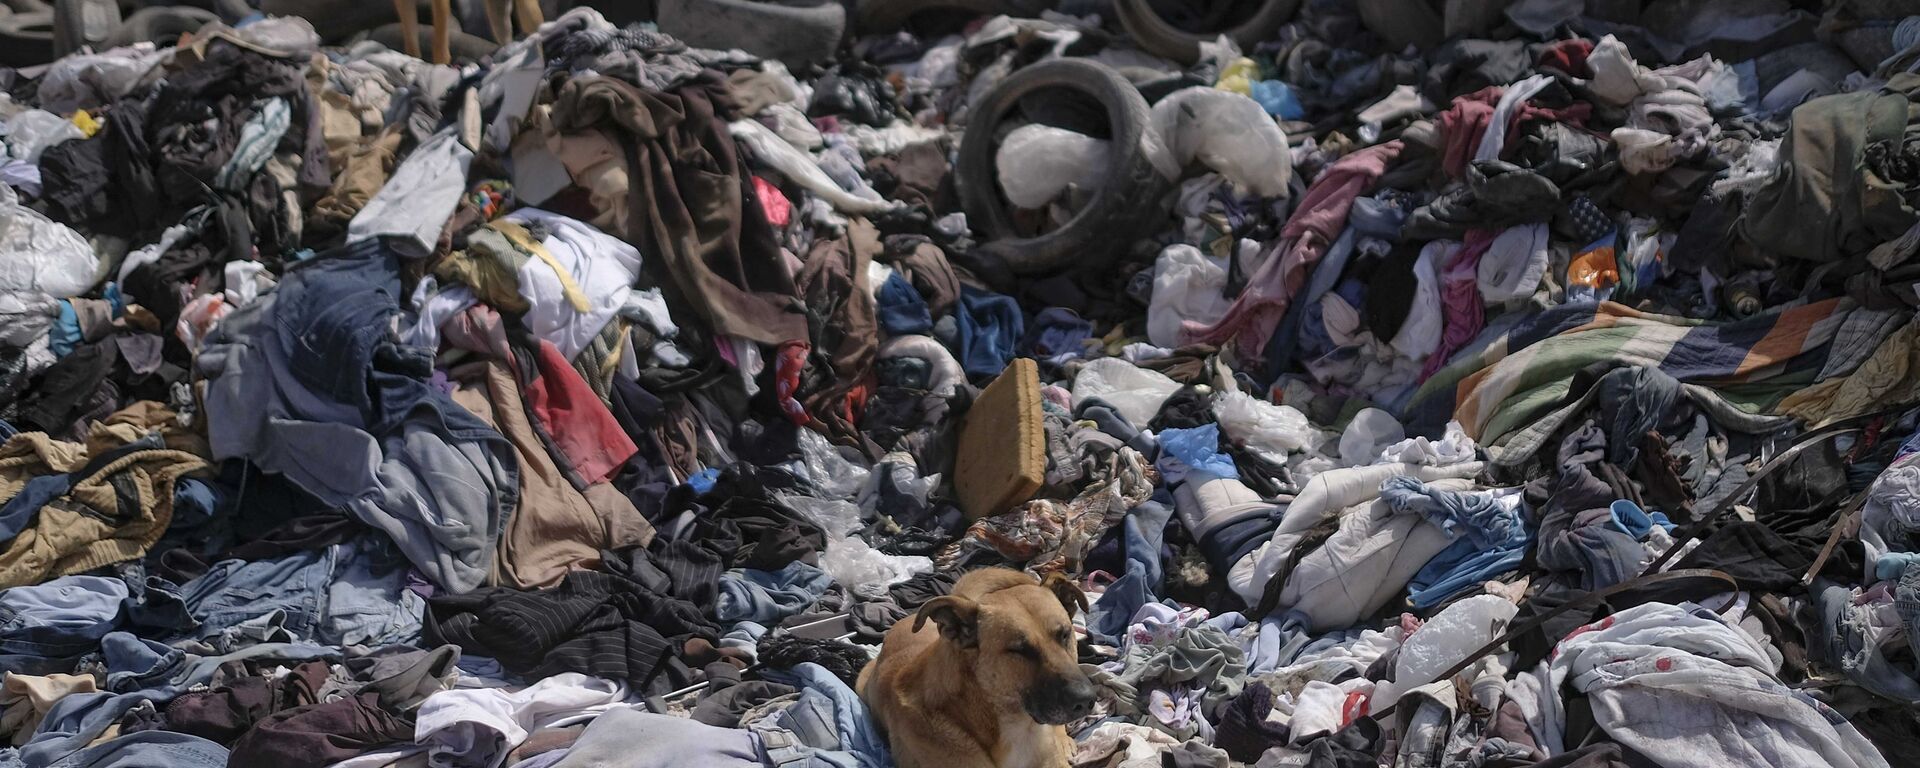 كلاب مشردة تستريح فوق كومة كبيرة من الملابس المستعملة بالقرب من حي لا مولا في ألتو هوسبيسيو، تشيلي، 13 ديسمبر 2021 - سبوتنيك عربي, 1920, 28.05.2022